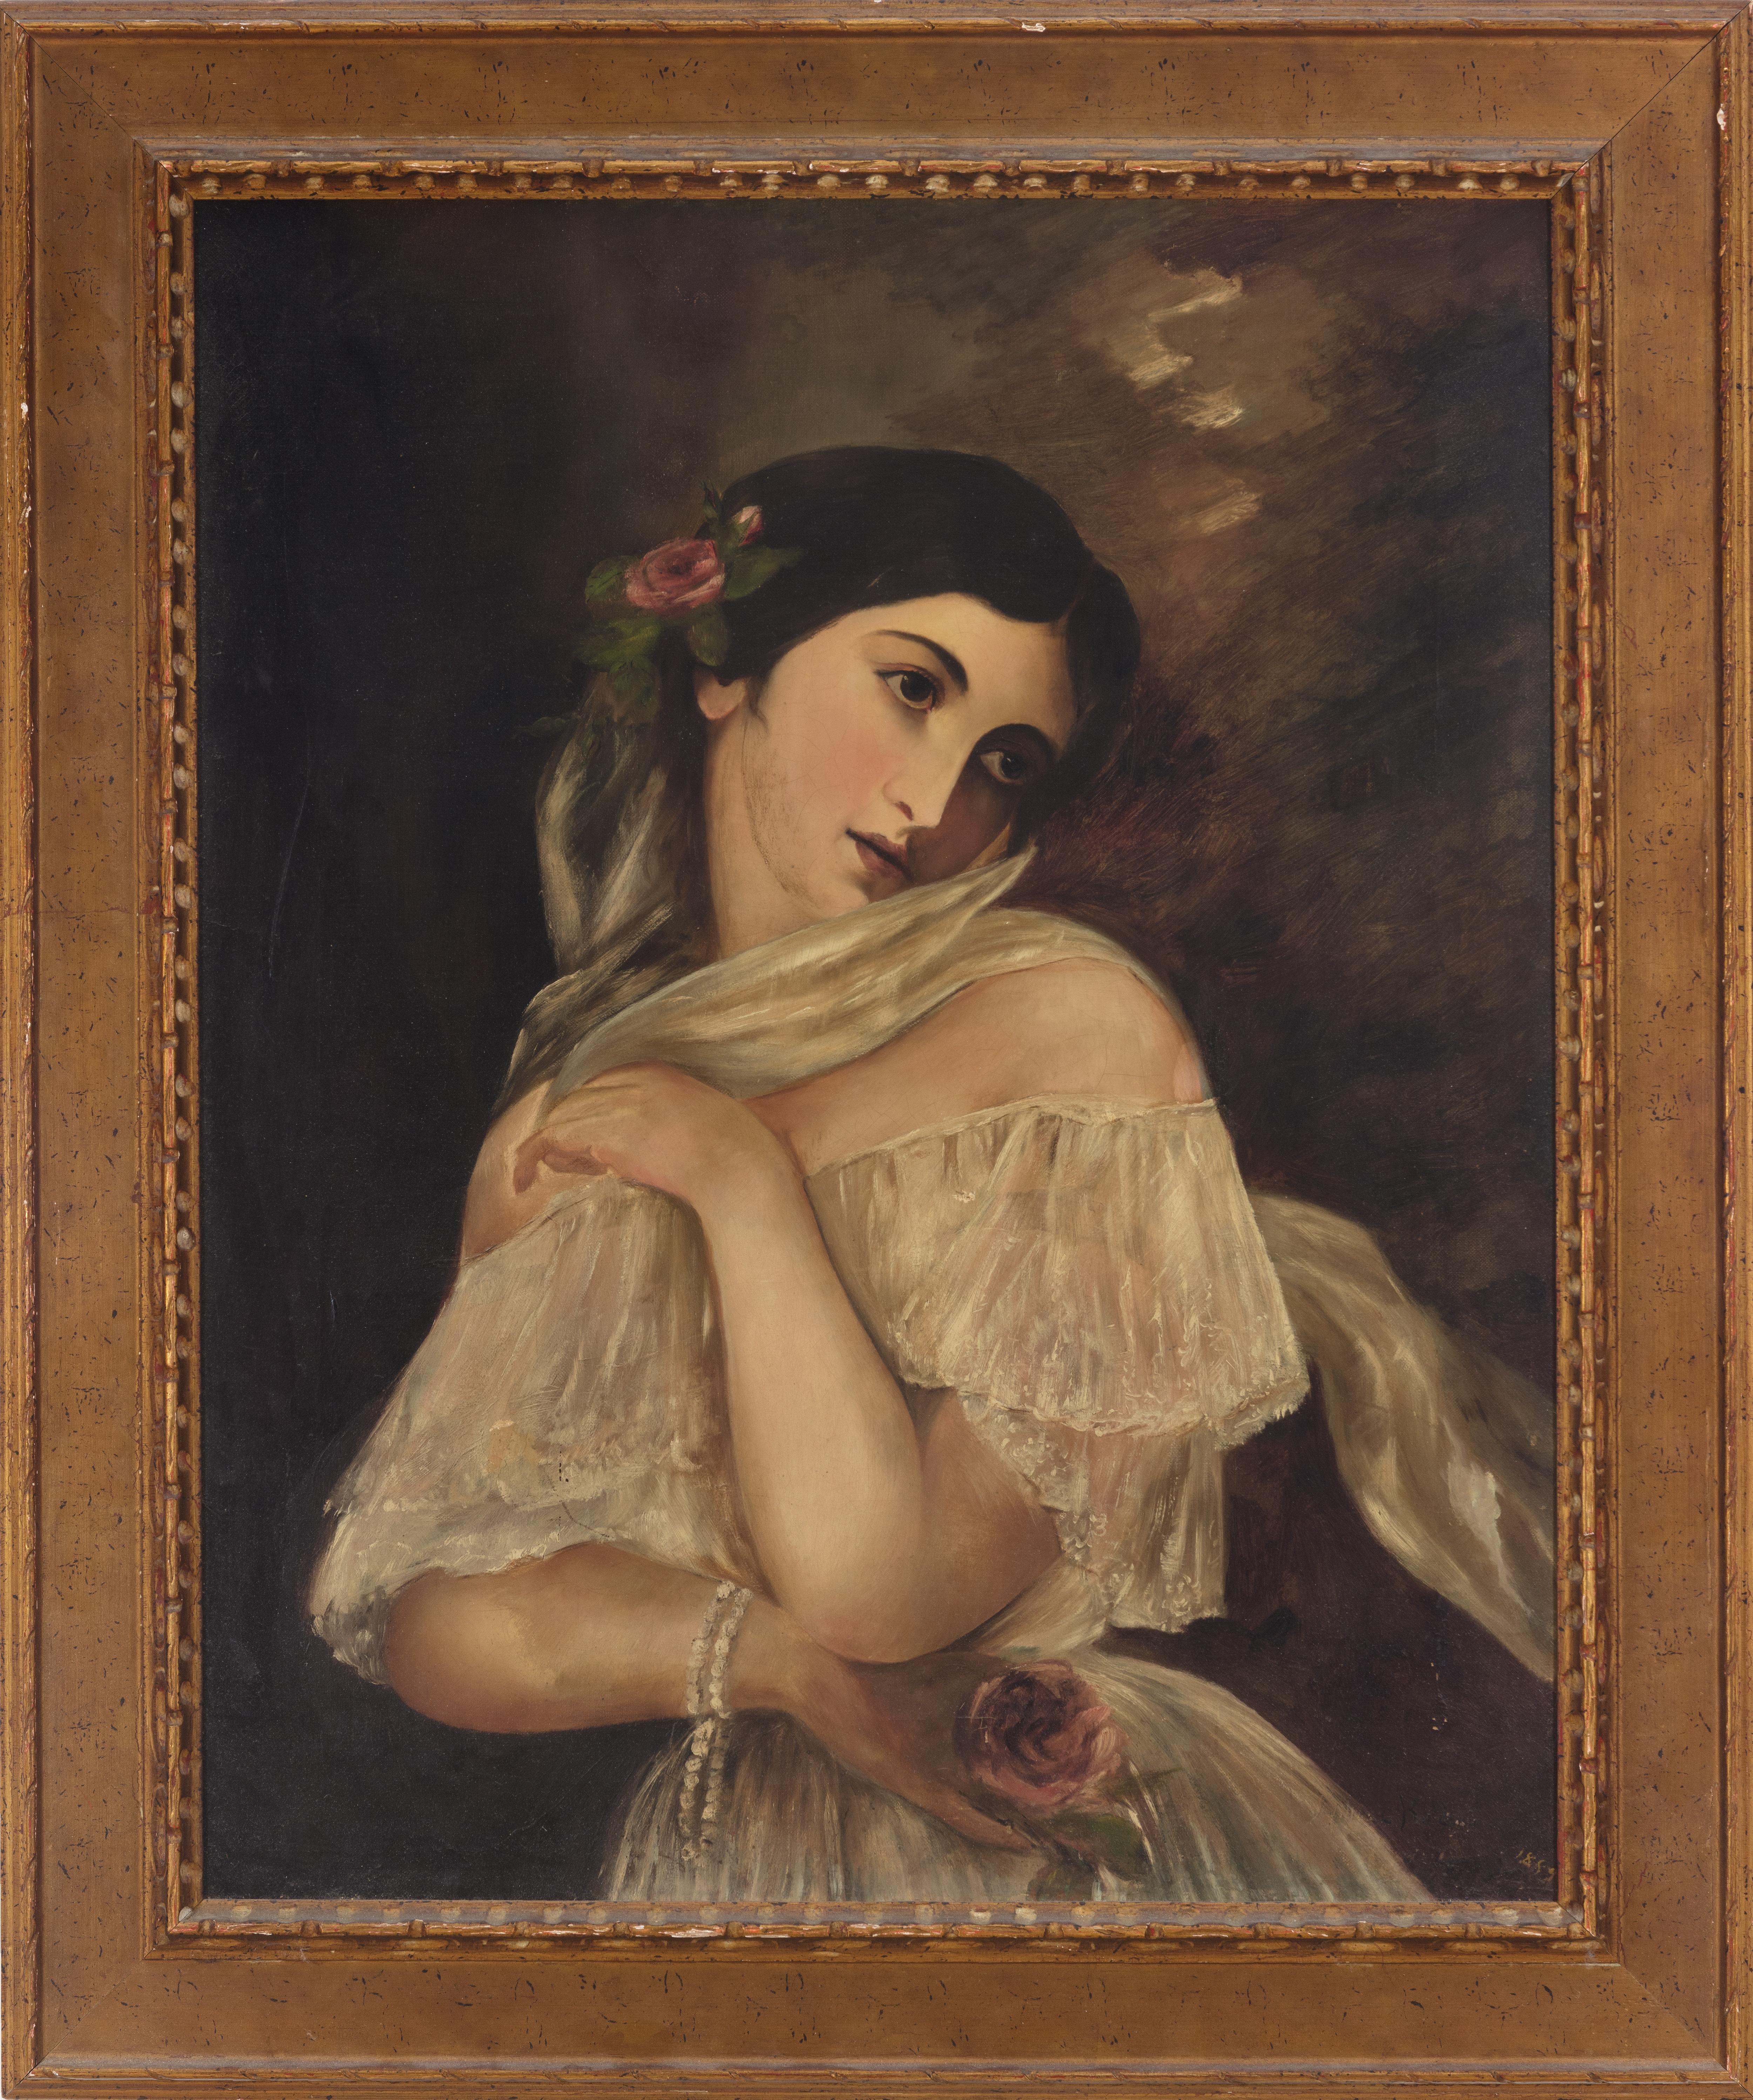 Millie Eva Wehn Baldwin Figurative Painting - Female Oil Portrait Delicate Austria Romantic 1800s Vintage Woman Realism Signed